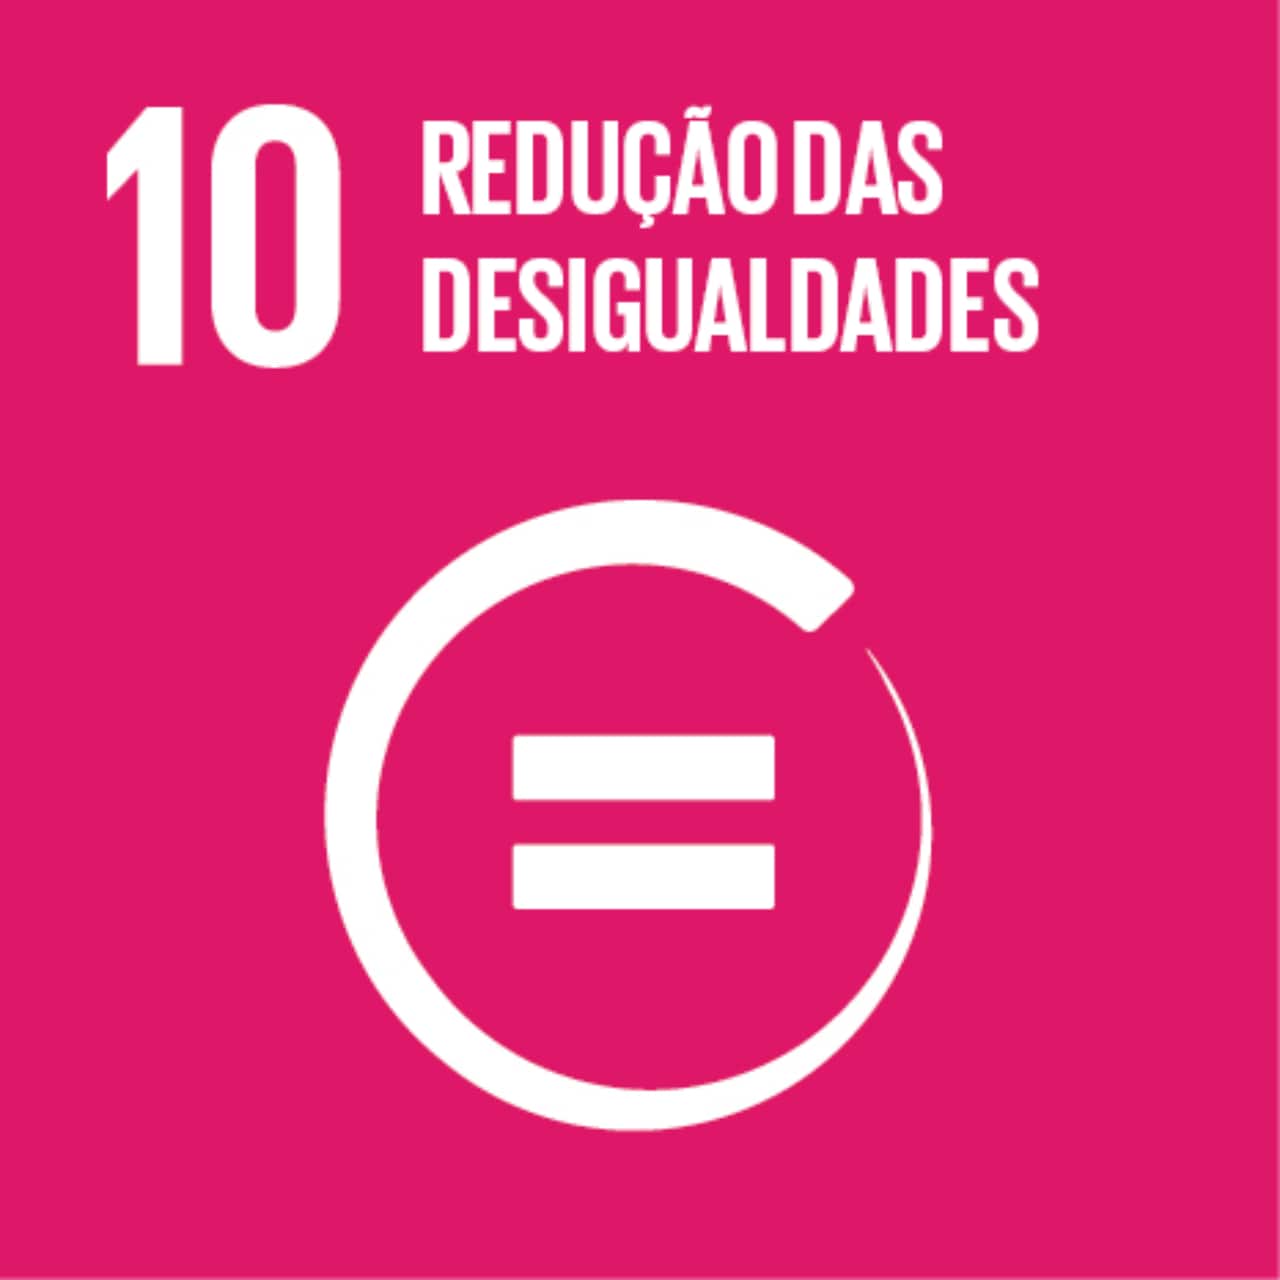 Imagem que representa o ODS número Dez – Redução das desigualdades, com fundo pink e um círculo com um sinal de igual dentro dele.